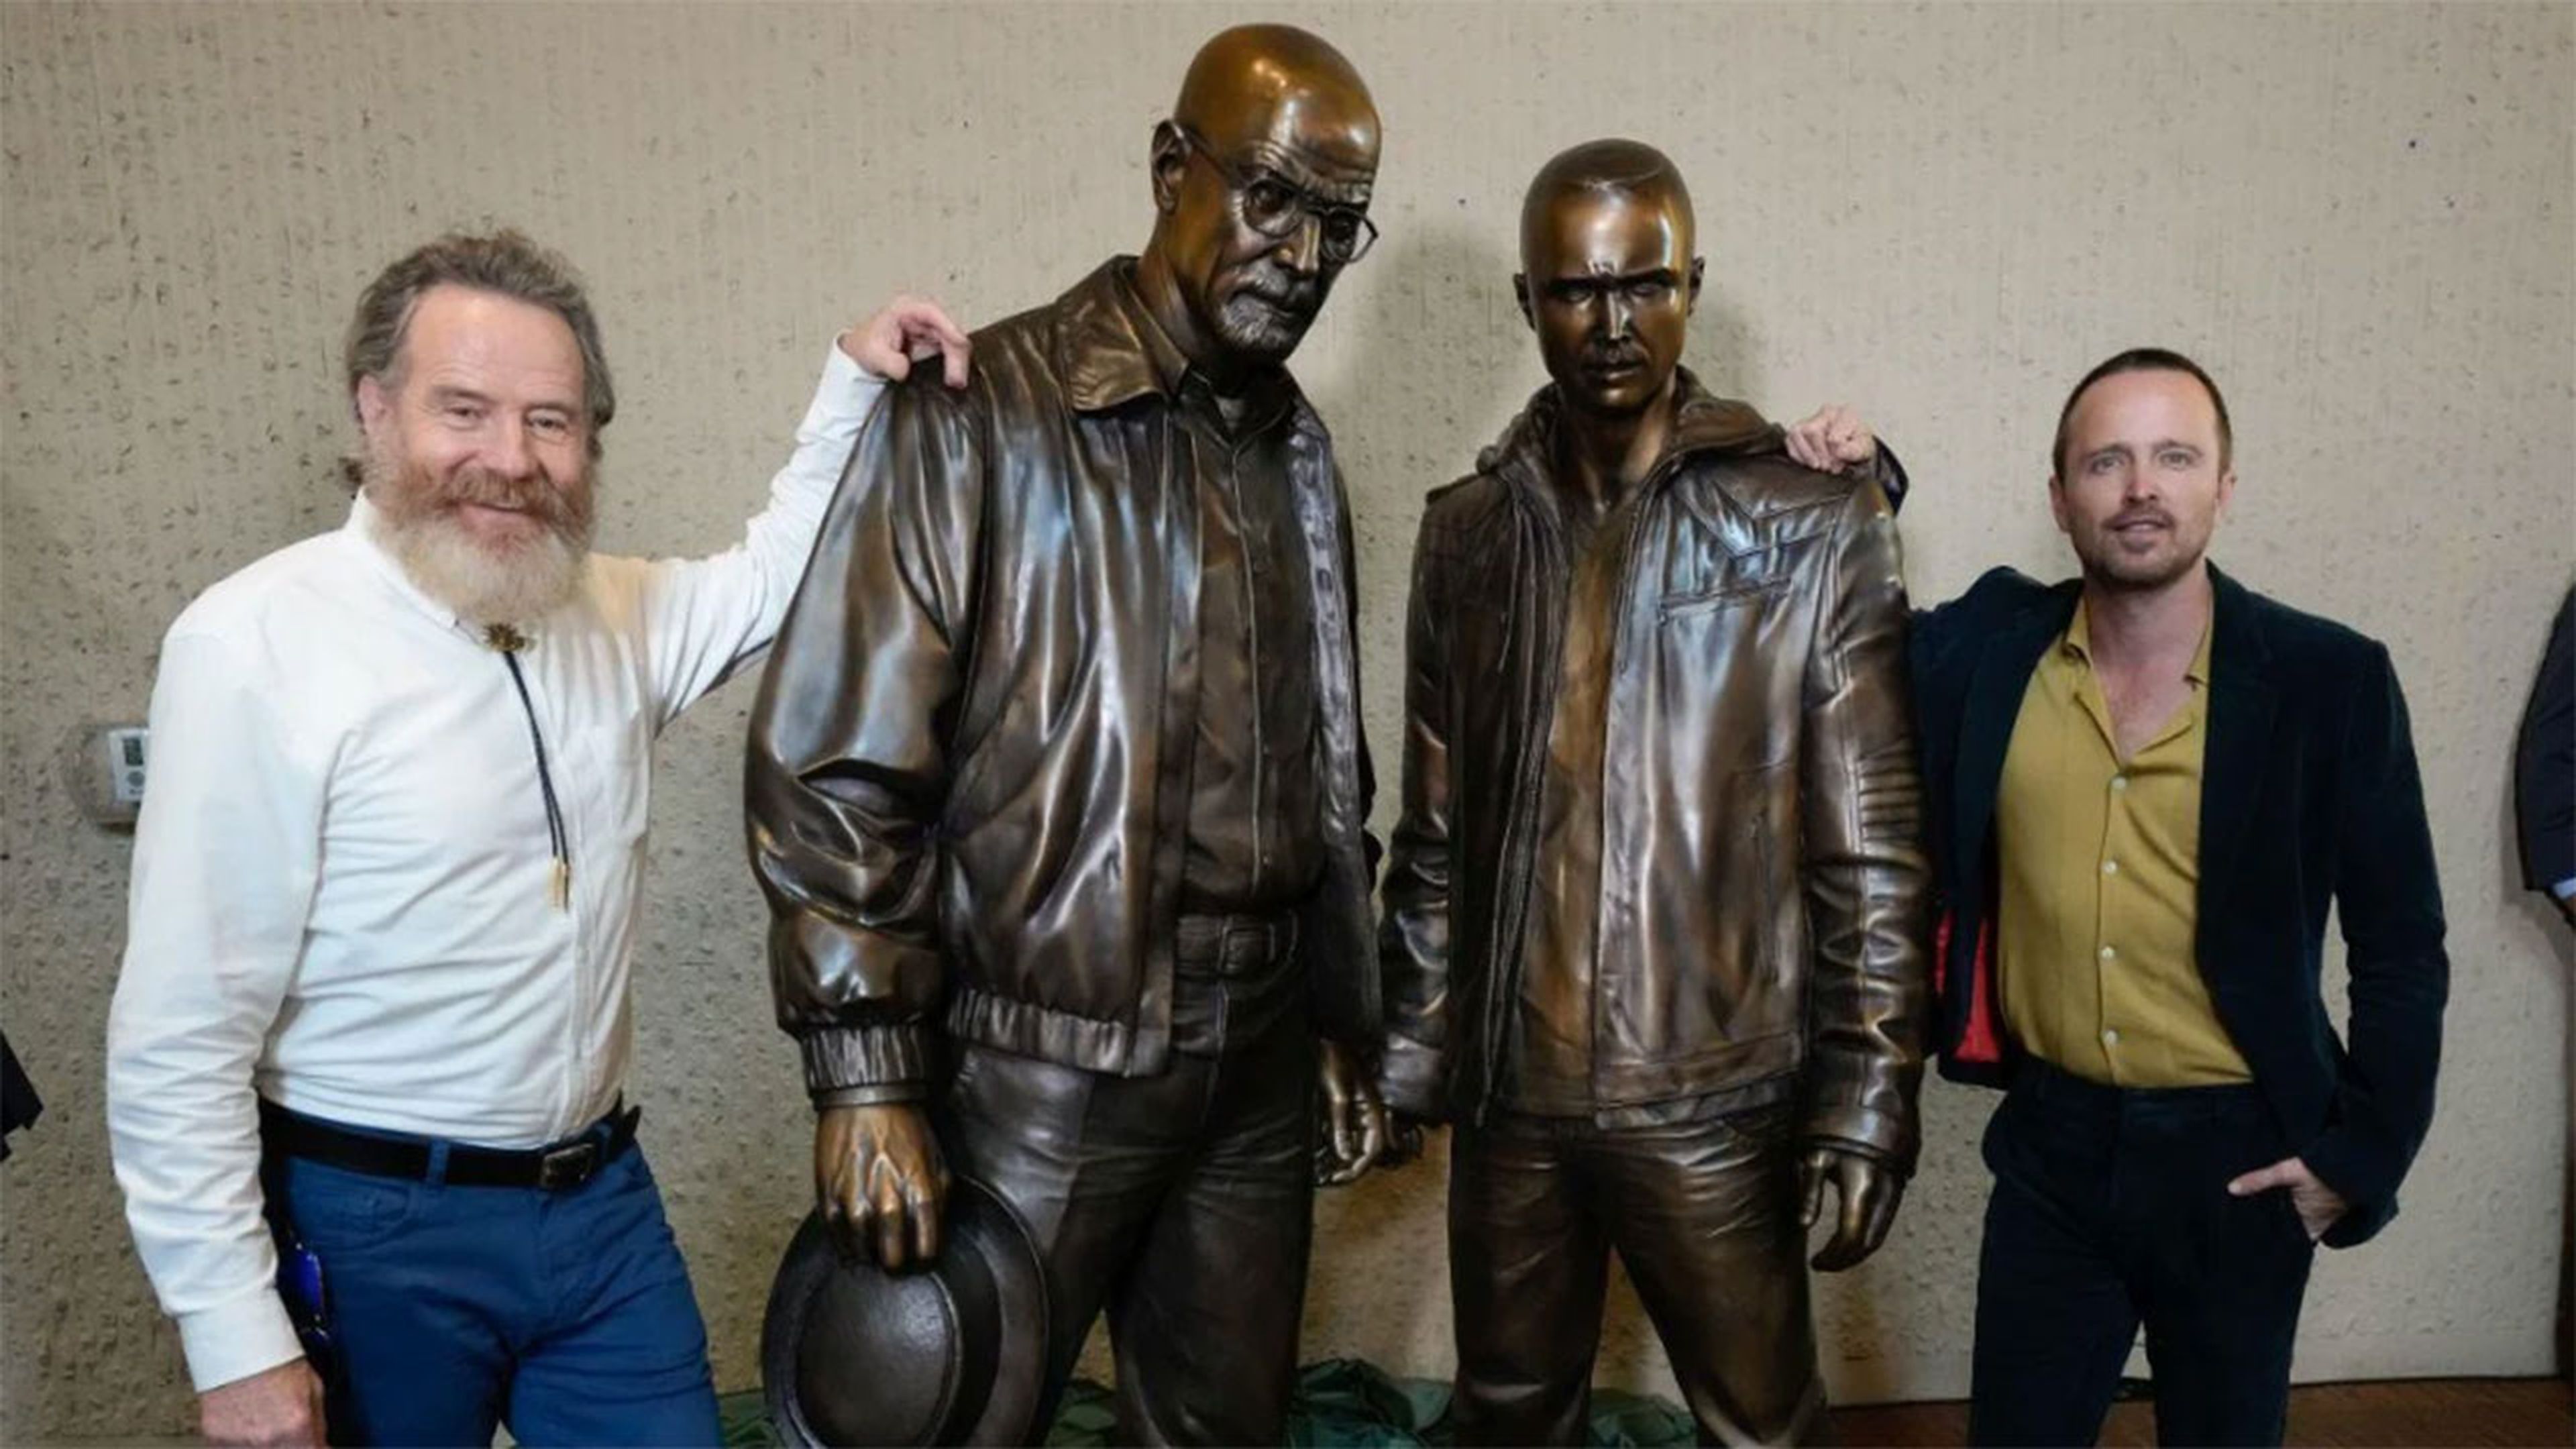 Los protagonistas de Breaking Bad inmortalizados en dos estatuas de bronce en la ciudad de Albuquerque